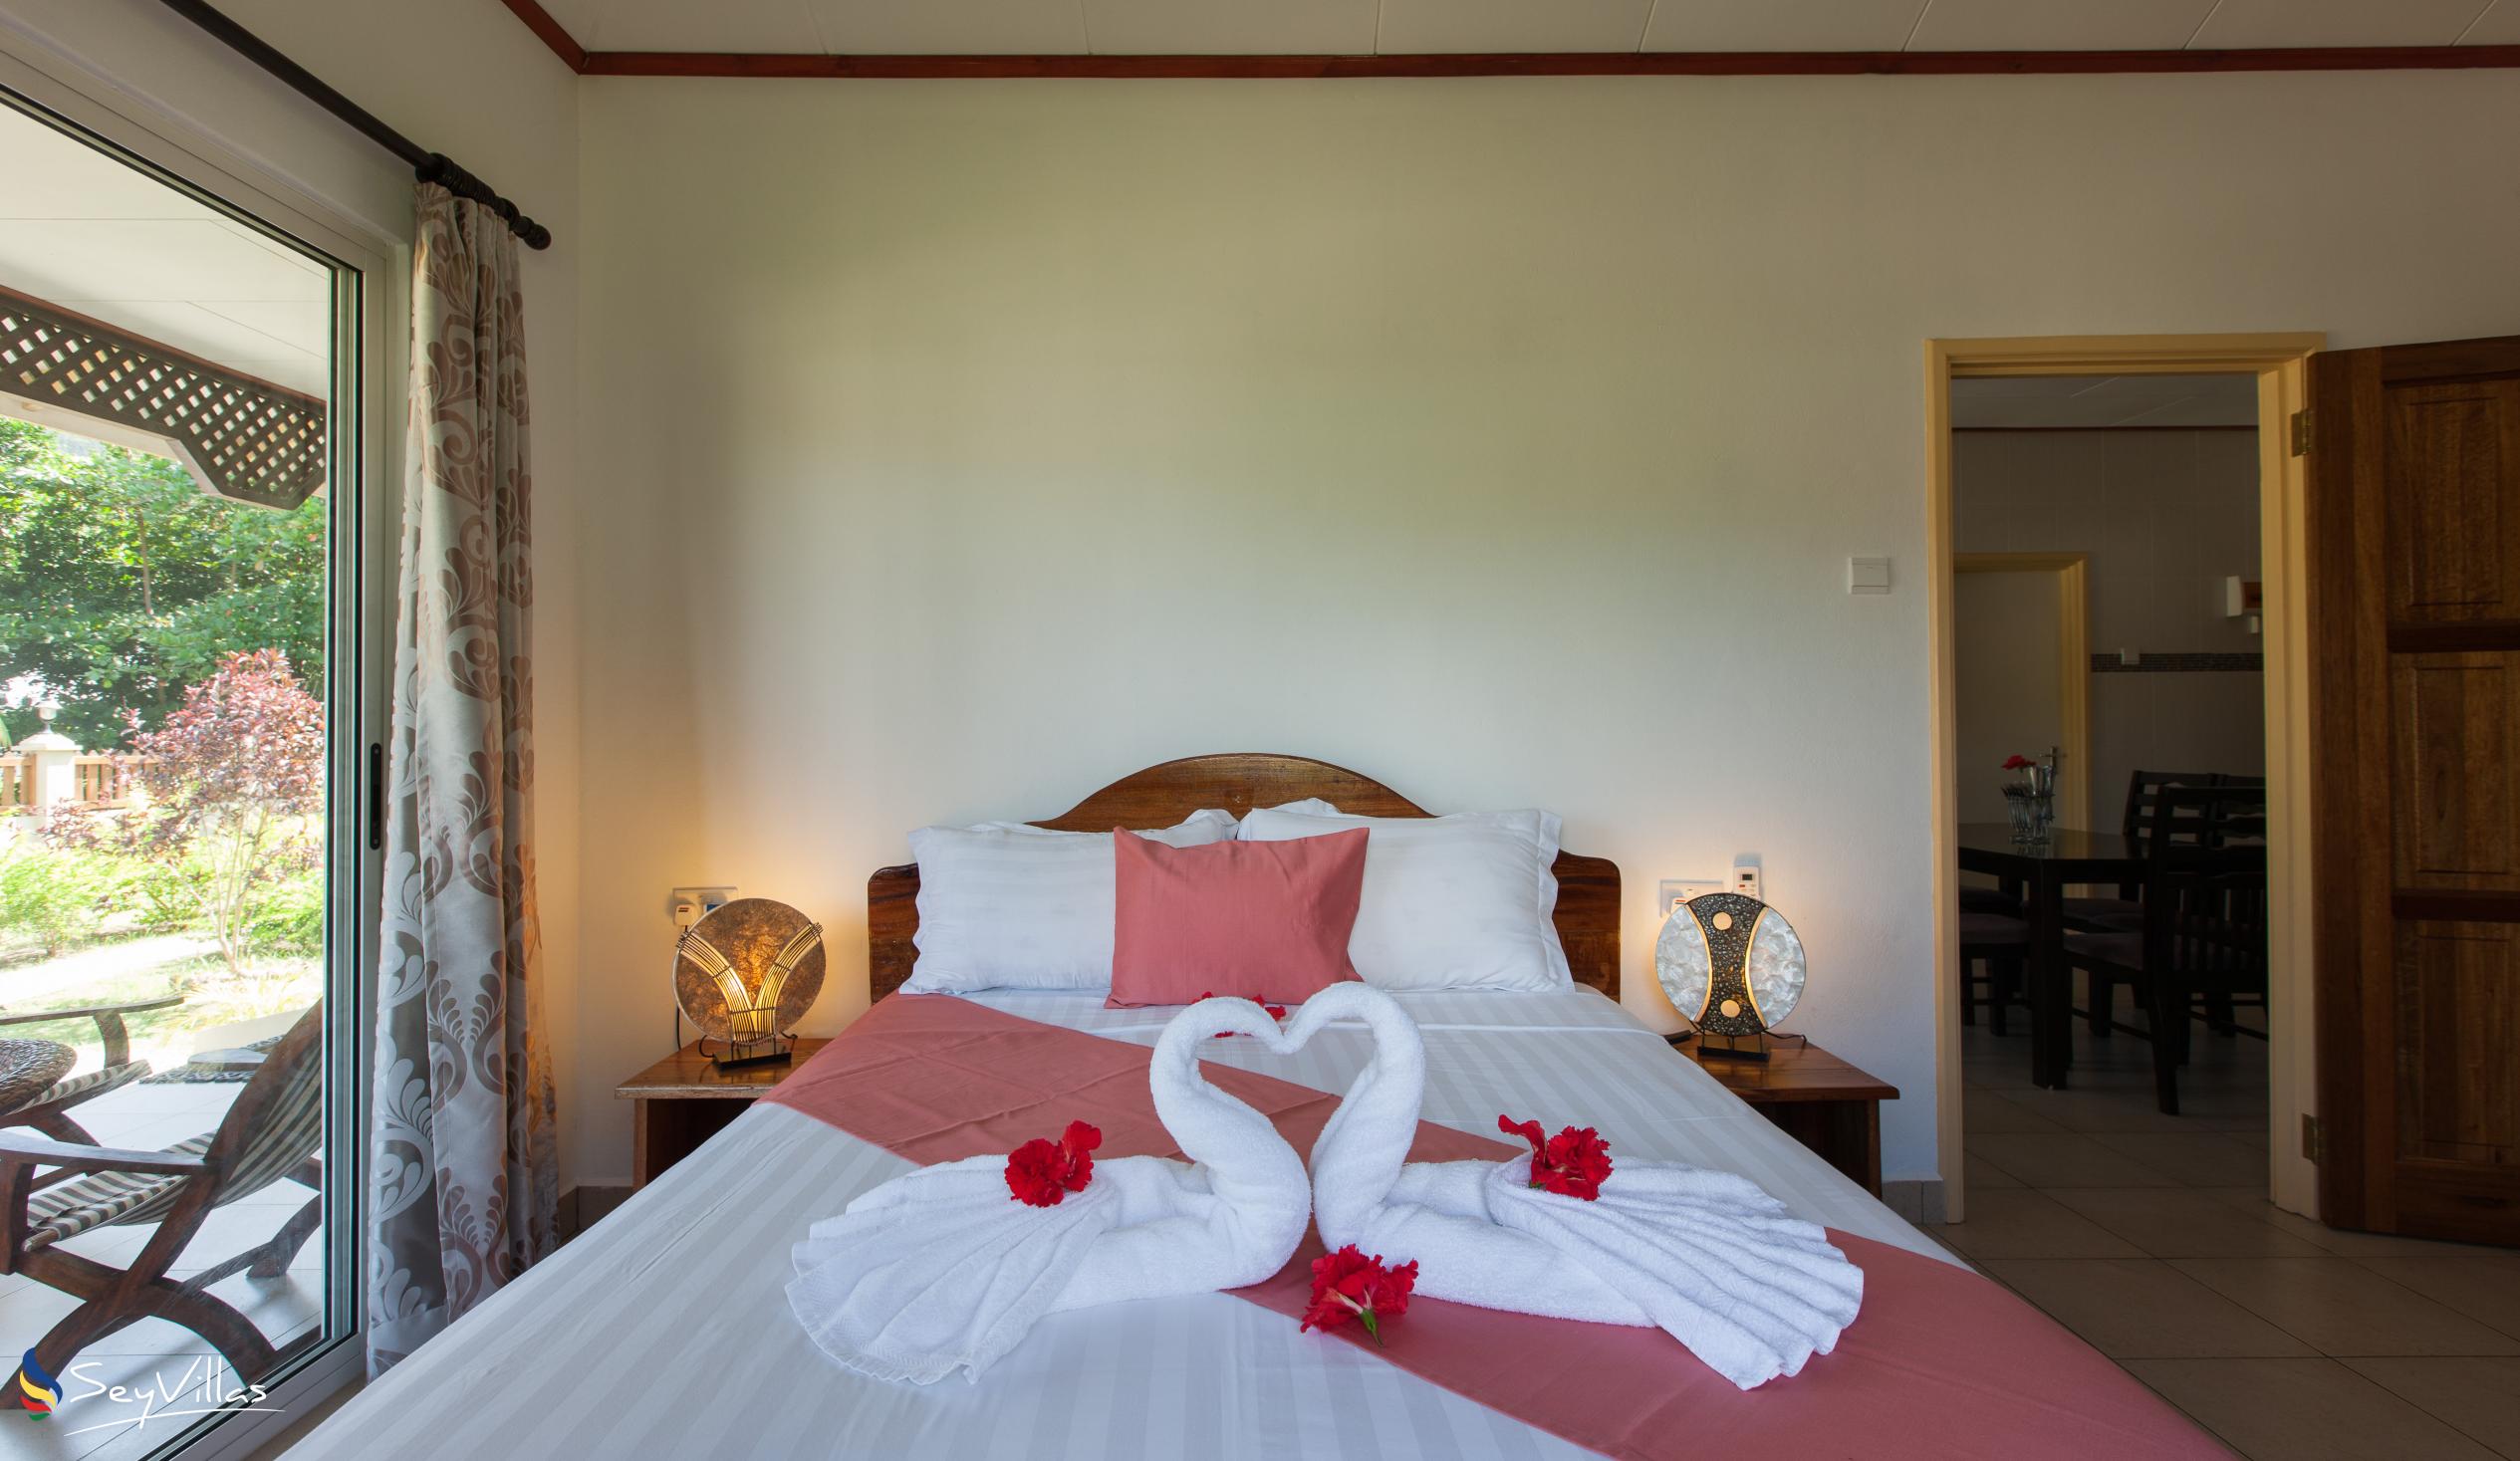 Foto 58: Hostellerie La Digue - Chalet mit 2 Schlafzimmern - La Digue (Seychellen)